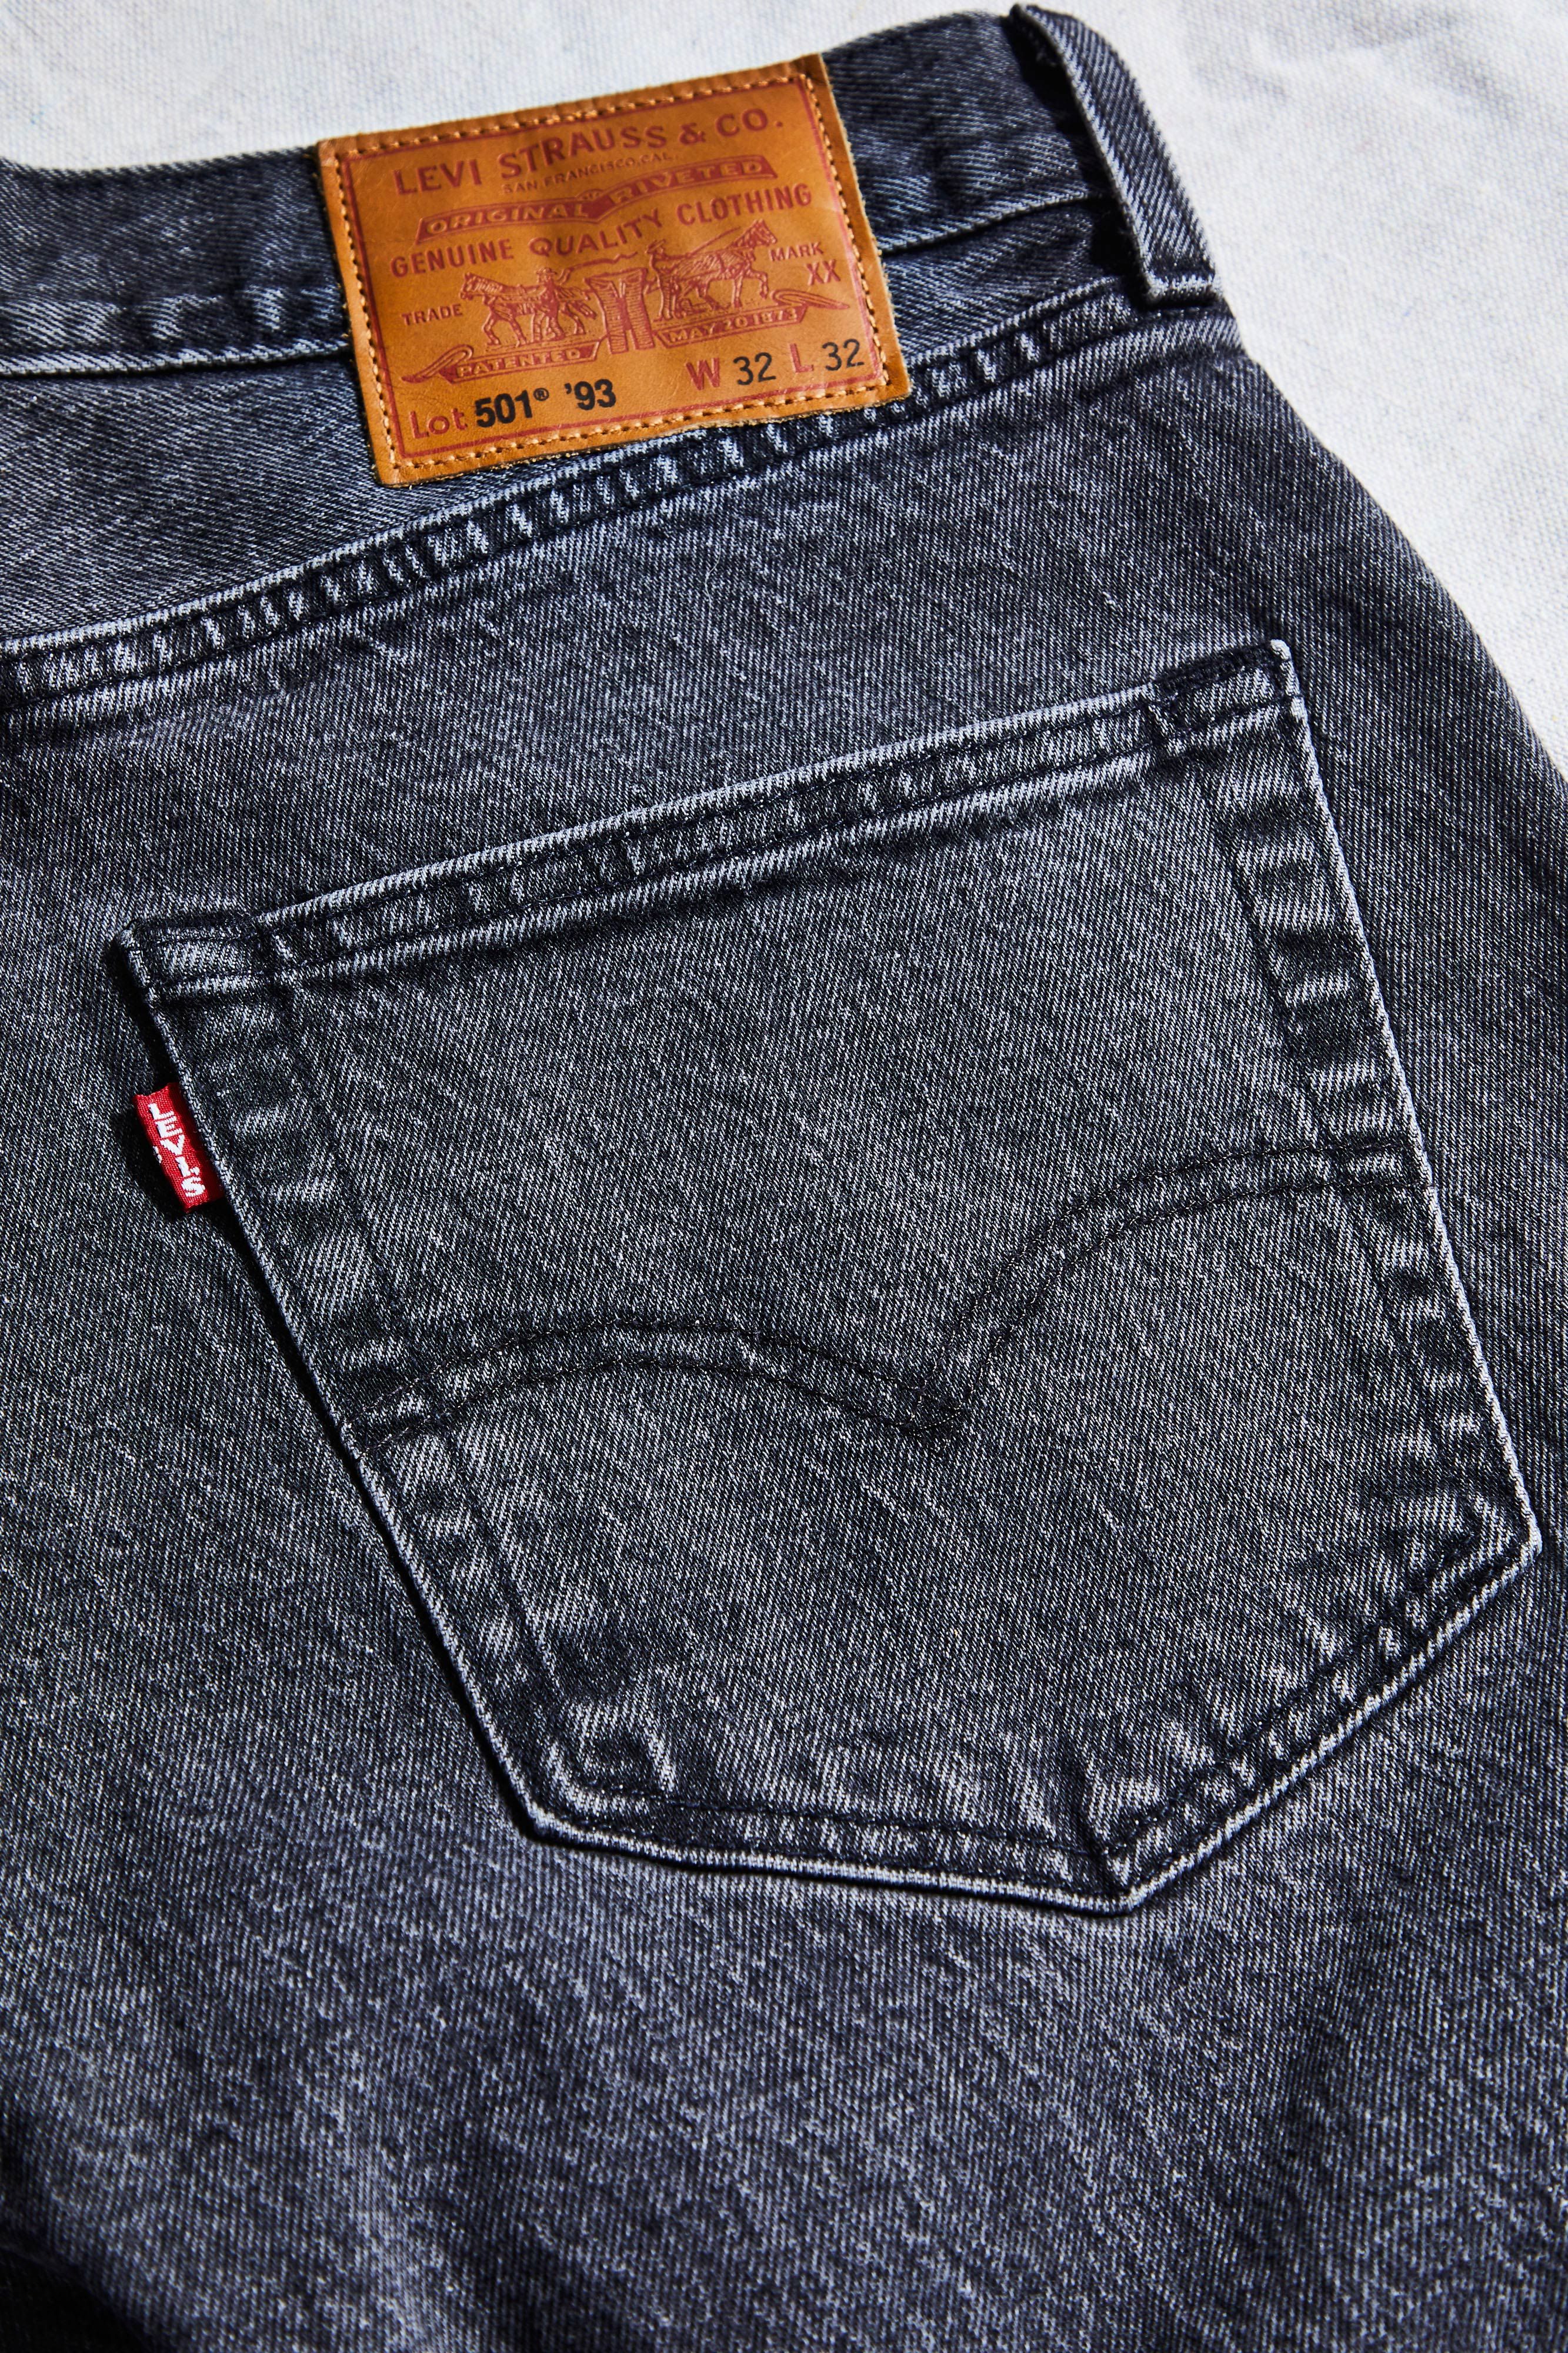 Levi's 501 '93 Jeans Endorsement